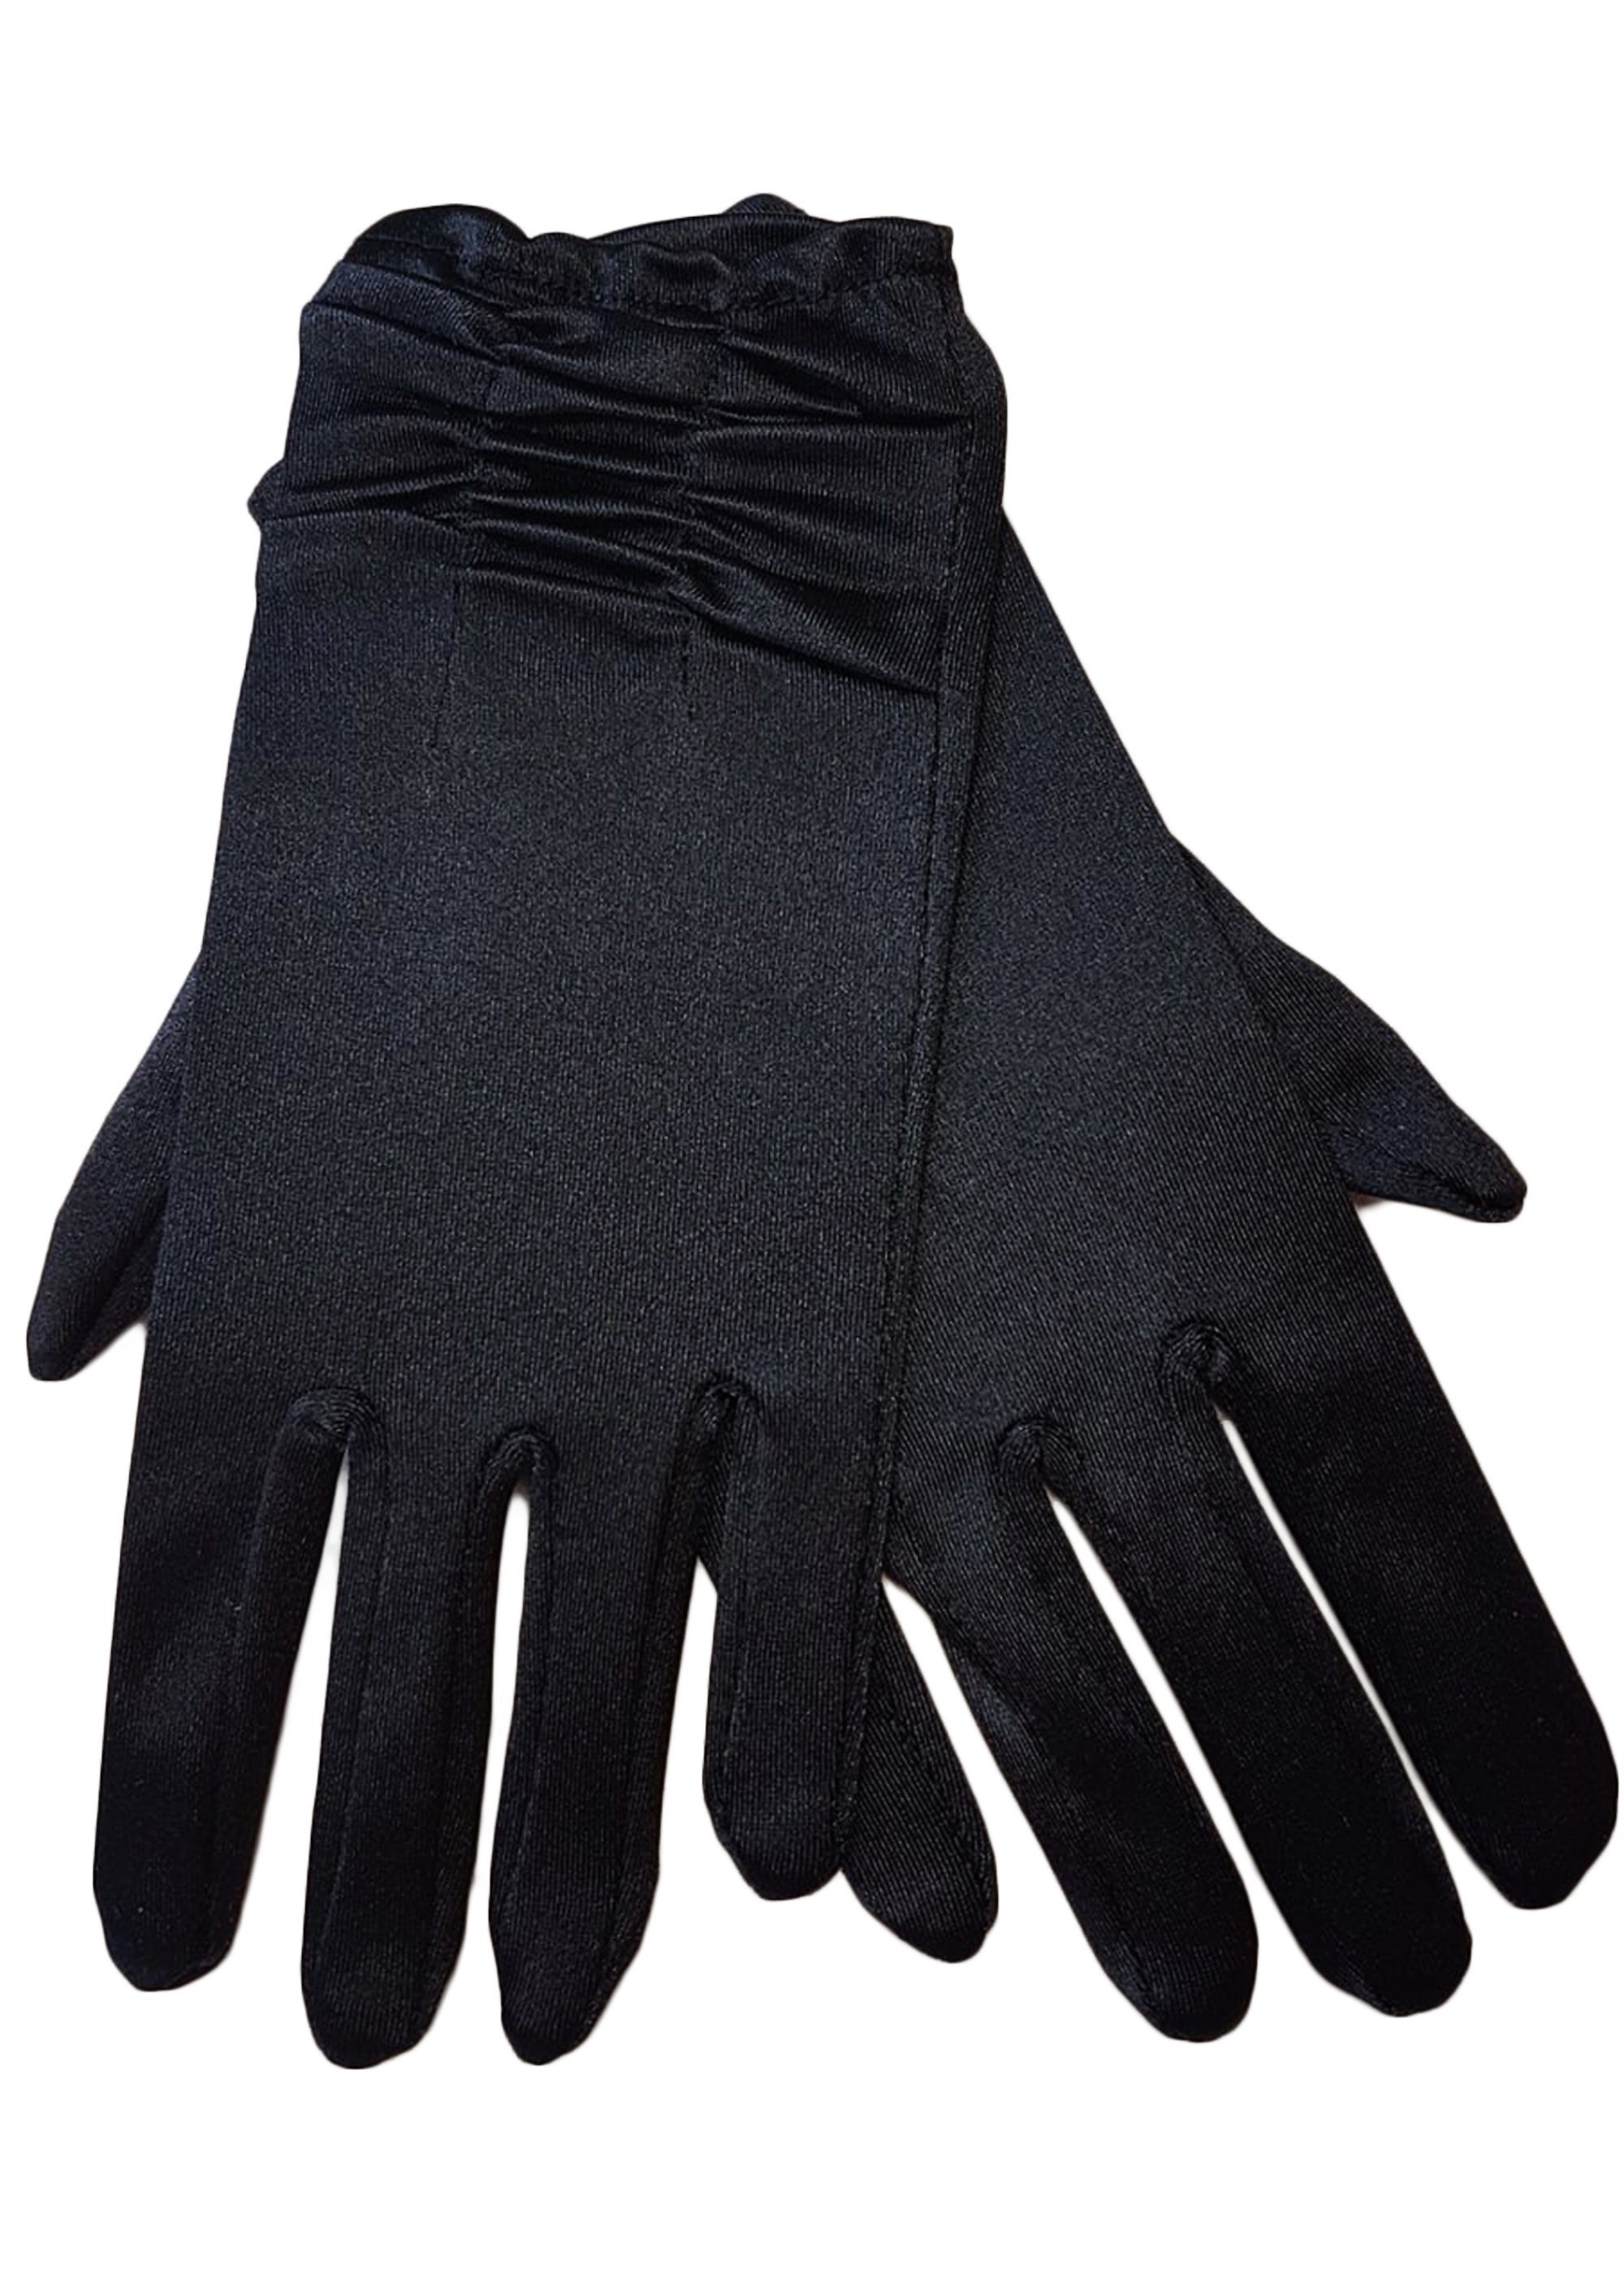 Abendhandschuhe Damen mit Raffung schwarz im Satin Trends Family Handschuhe kurz dehnbar Satin-Look